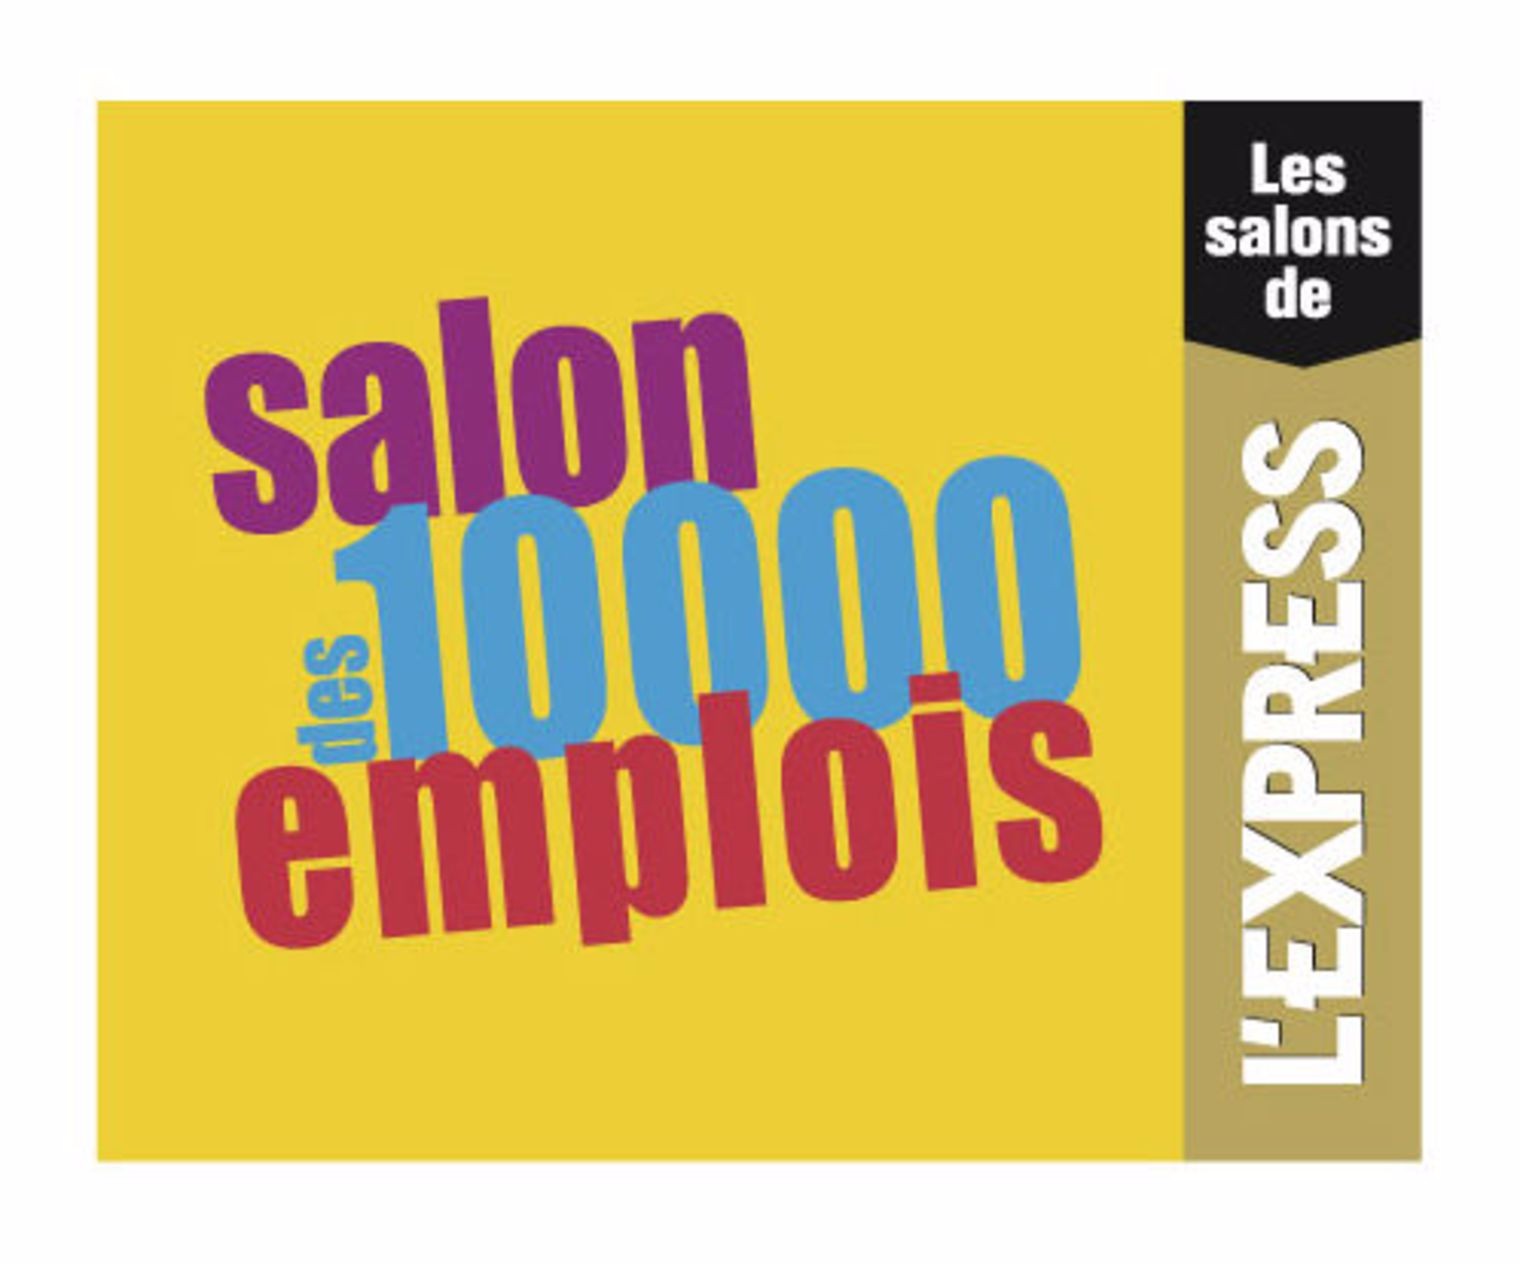 Le Salon des 10000 emplois 工作沙龙